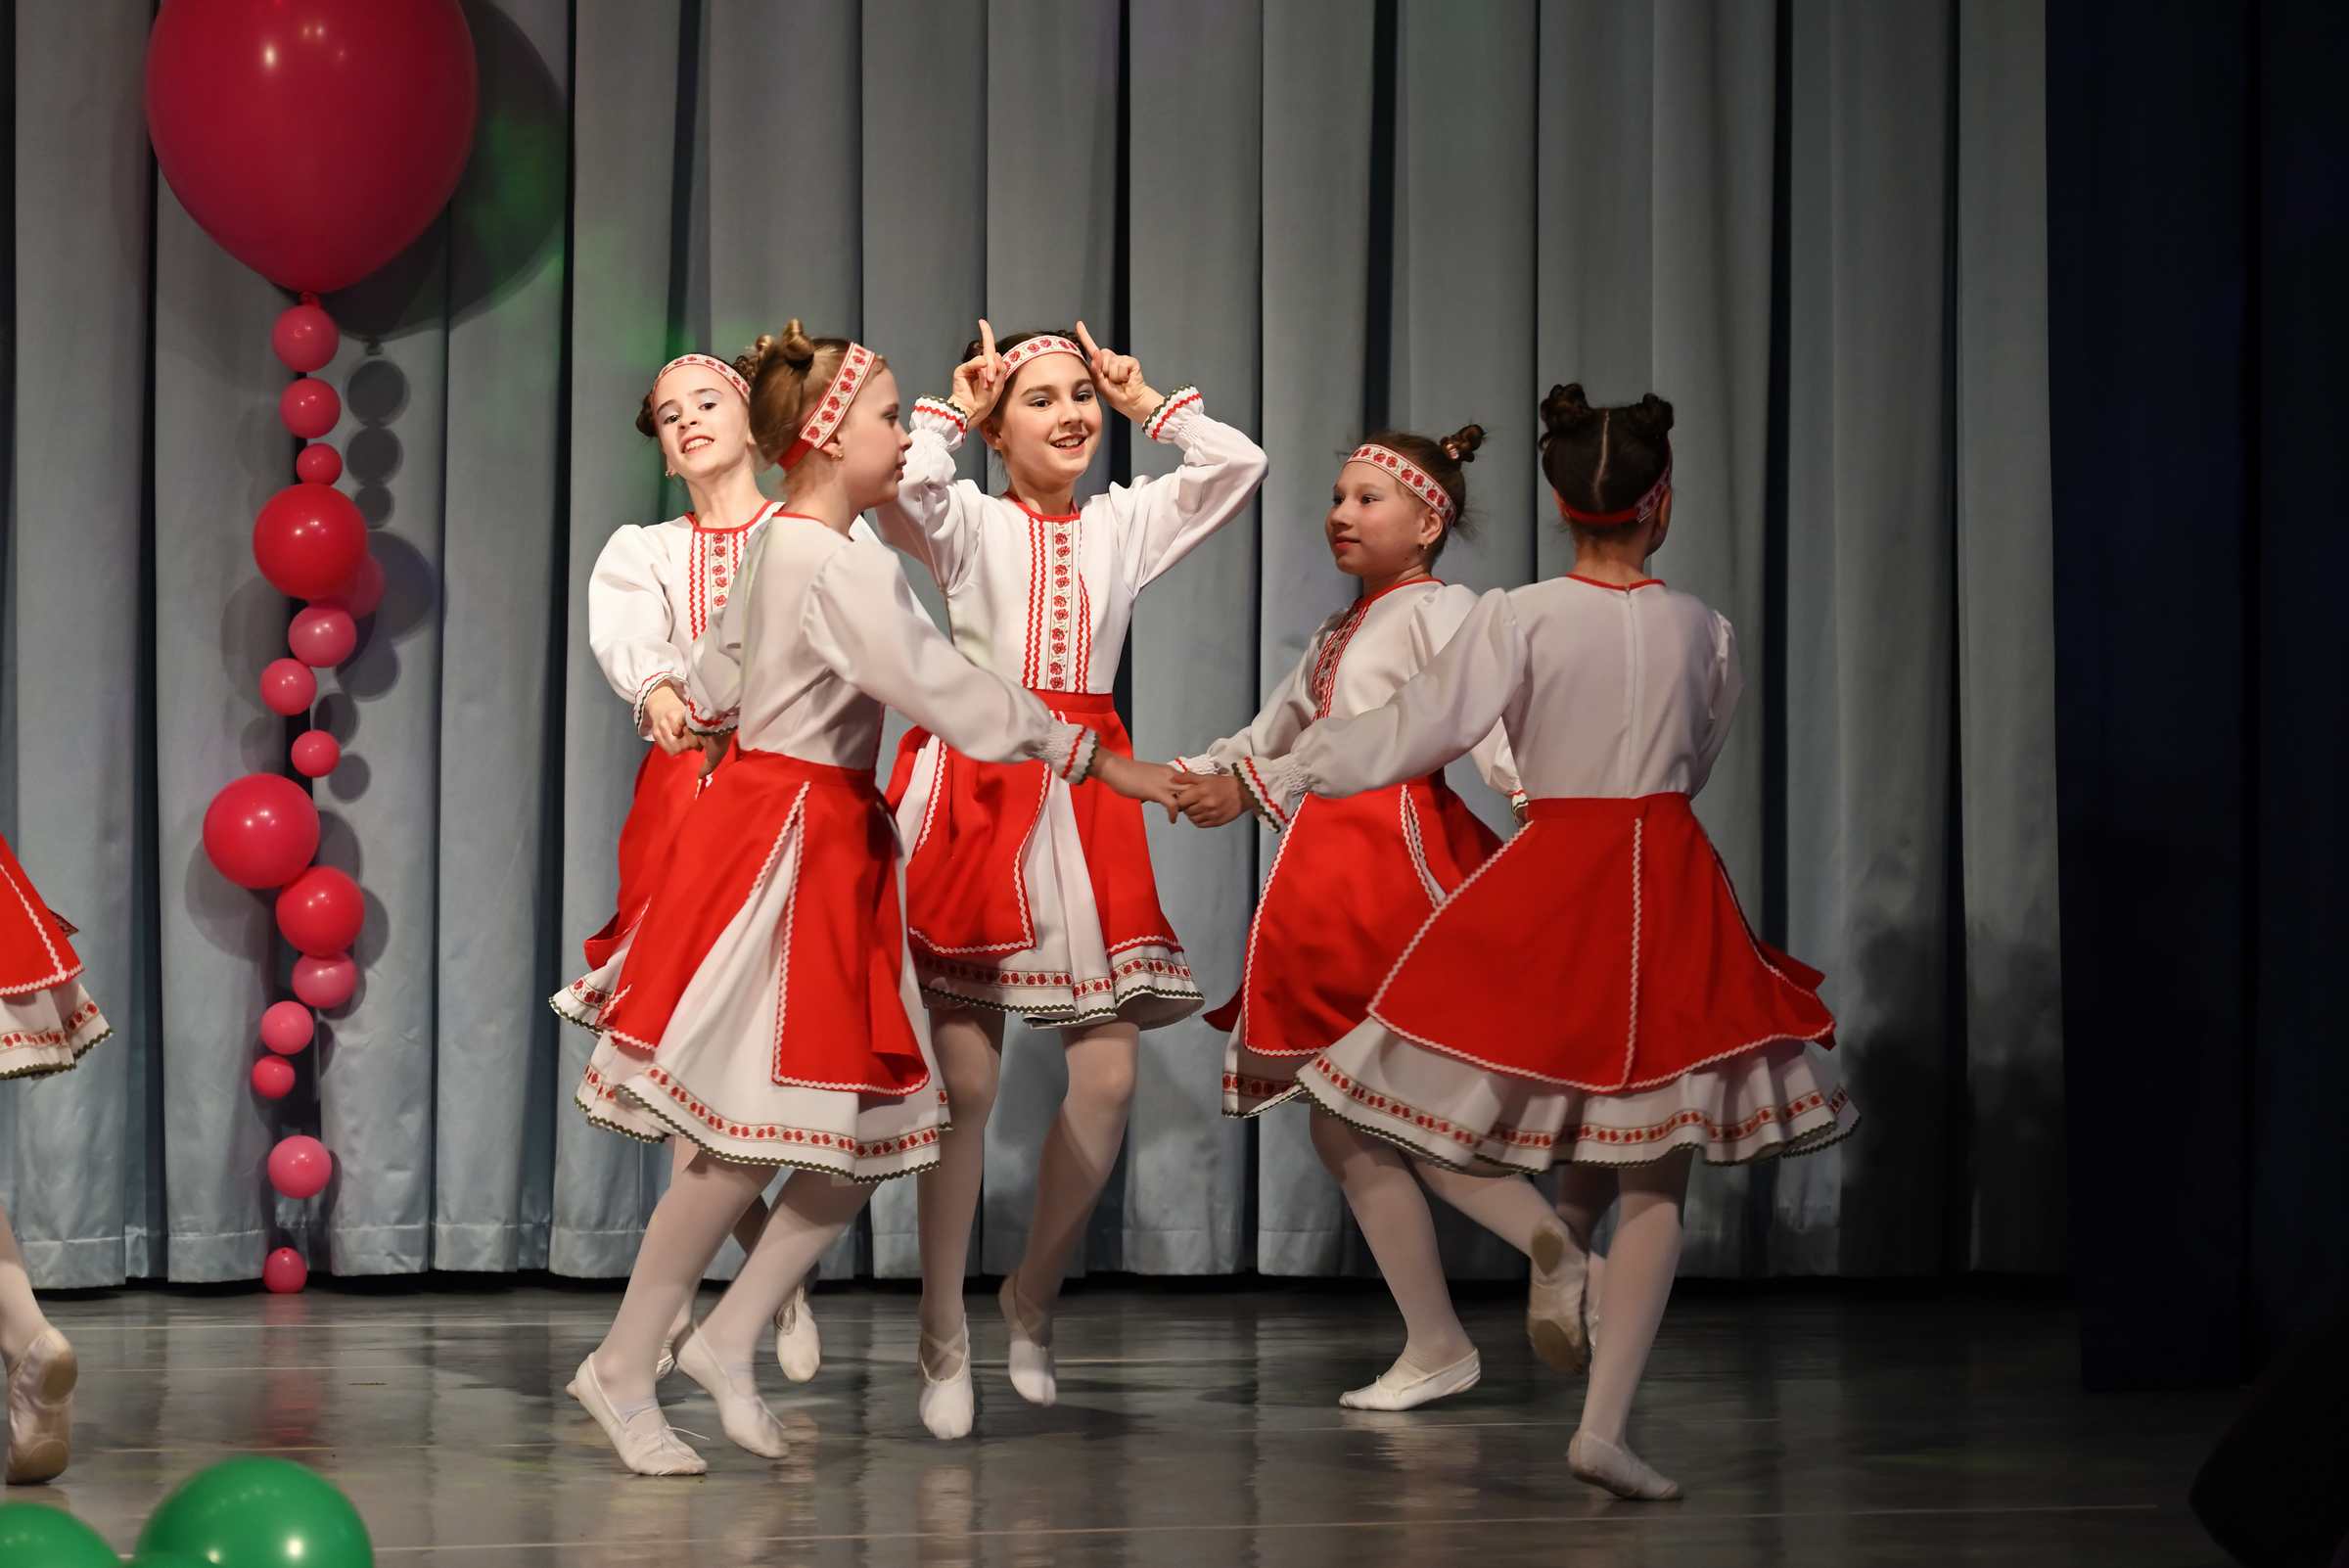 Отчётный концерт детского хореографического коллектива Солнцецвет. Белорусский танец «Козочка».